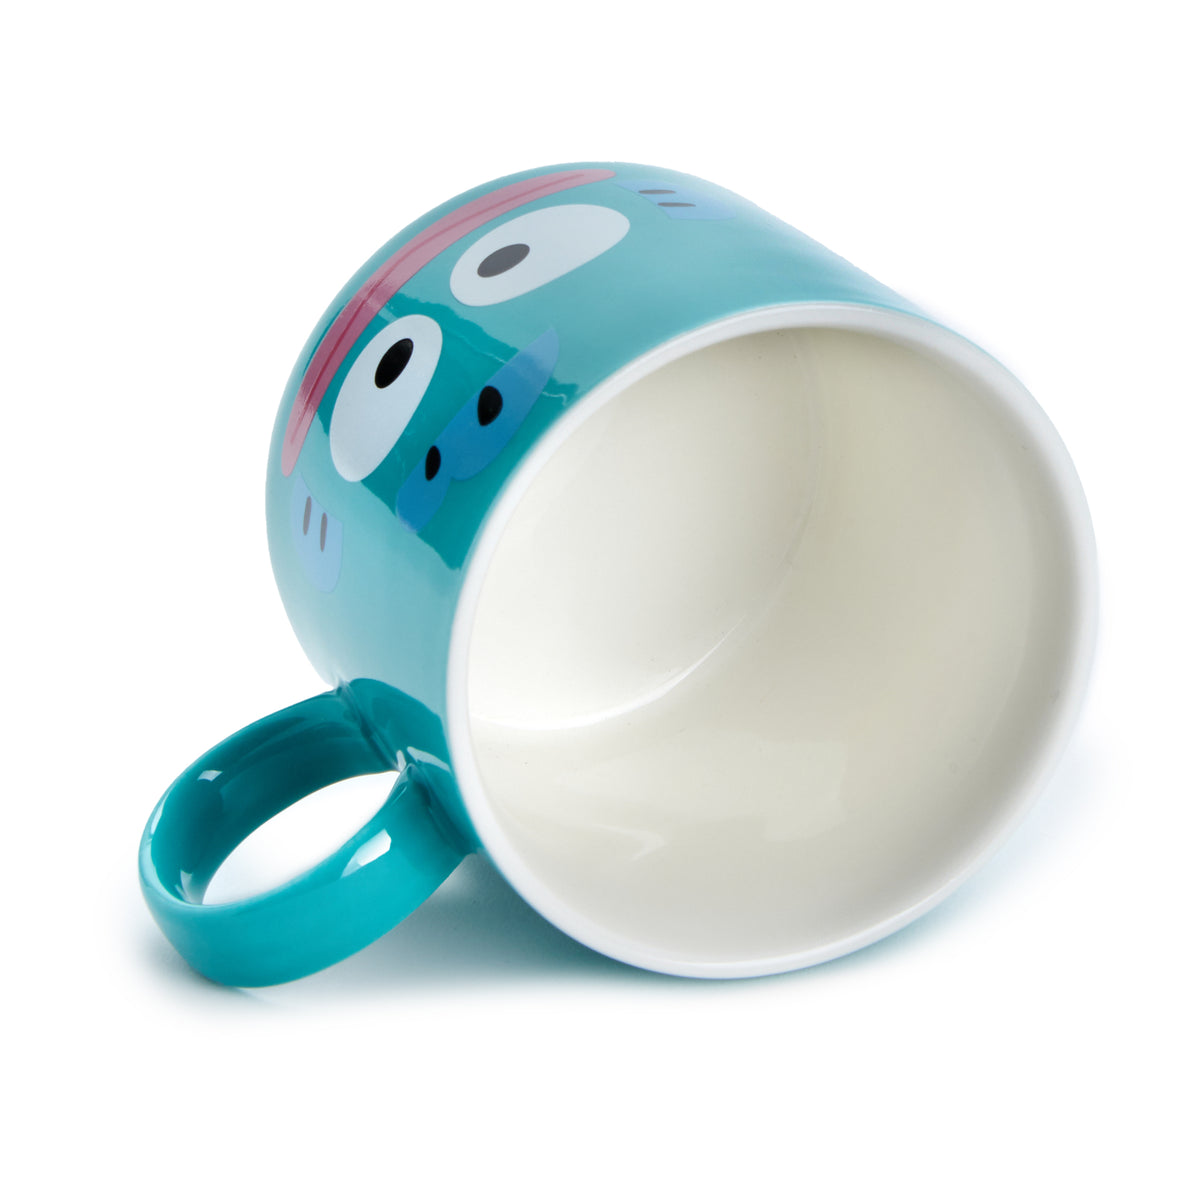 Hangyodon Ceramic Mug Home Goods Global Original   